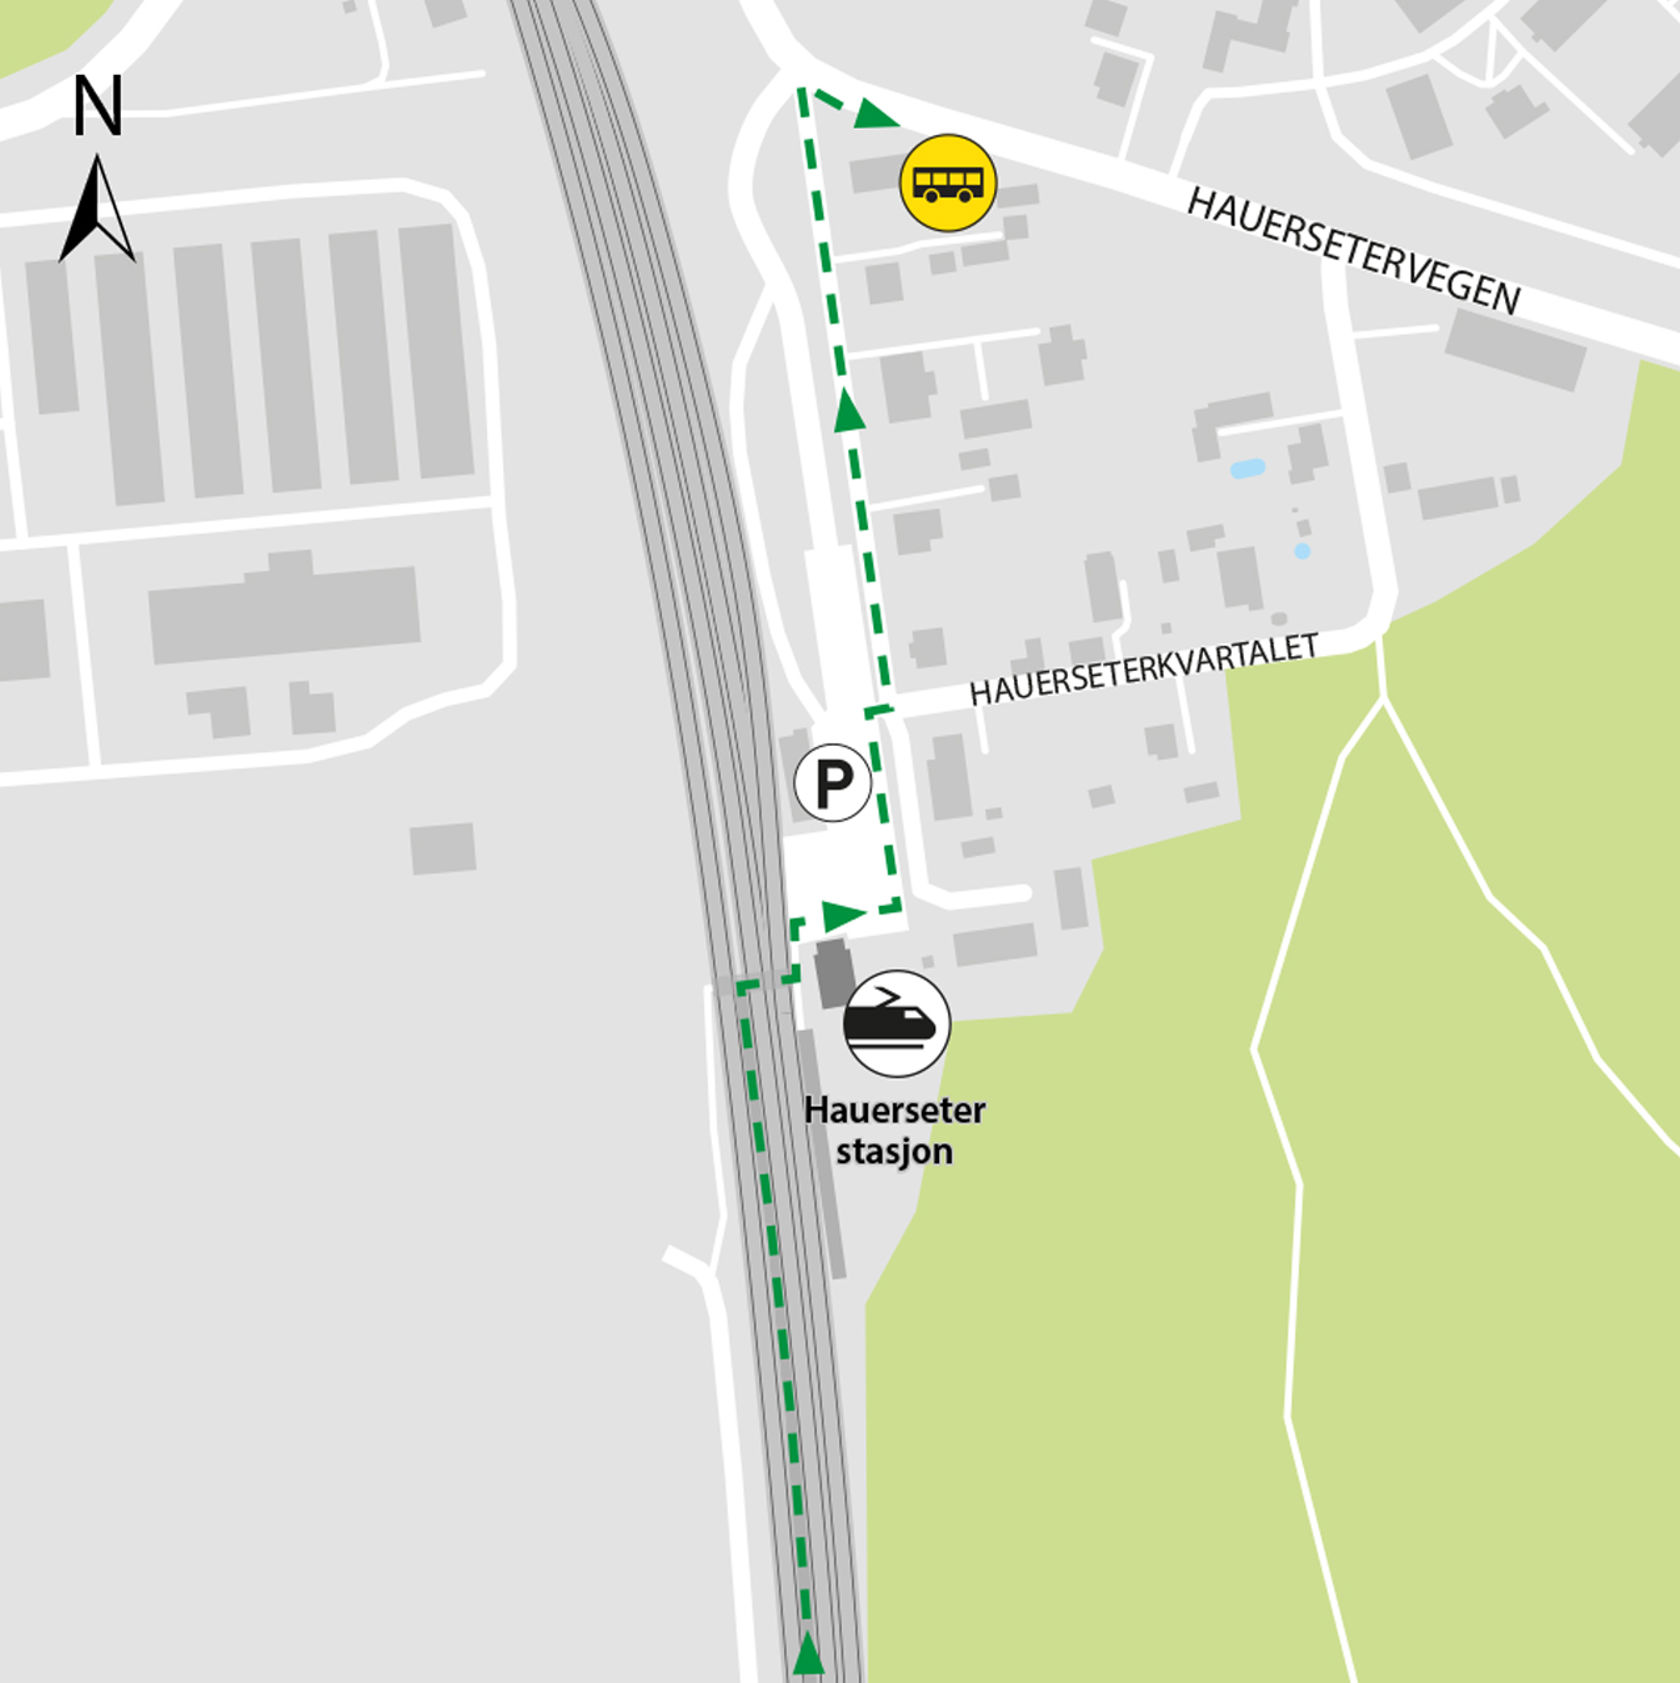 Kart som viser at bussene kjører fra bussholdeplassen Hauerseter stasjon i Hauerseterveien.